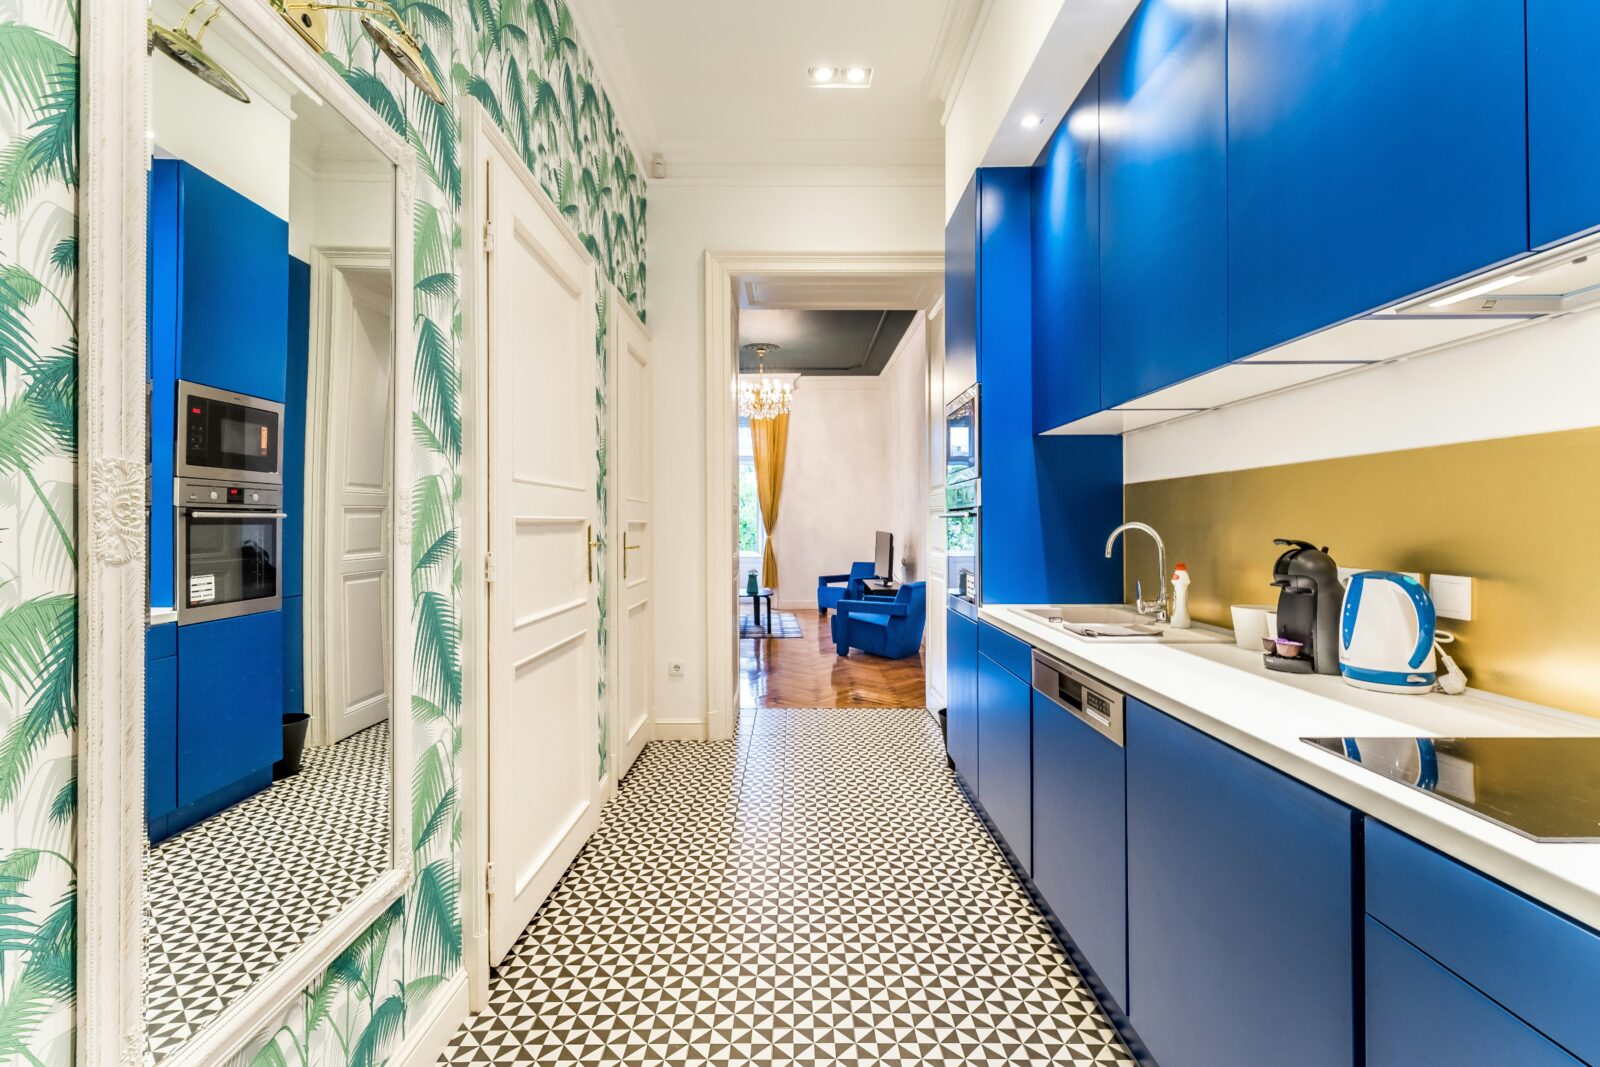 Móveis de cozinha em tom azul garrido combinado com traça antiga